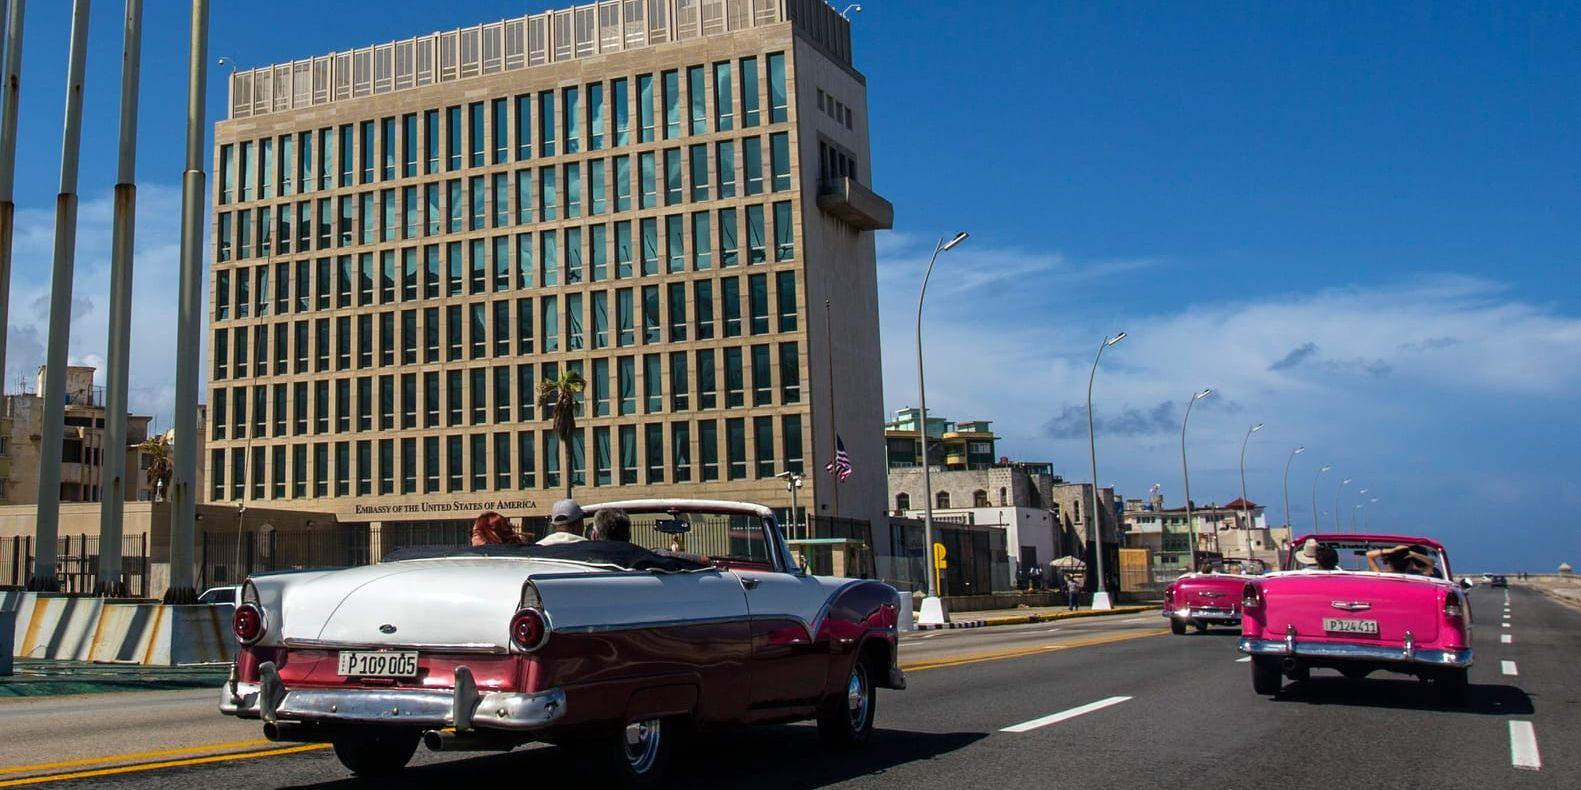 USA:s ambassad på Kuba, där det så kallade Havannasyndromet hos amerikanska tjänstemän först upptäcktes 2016.